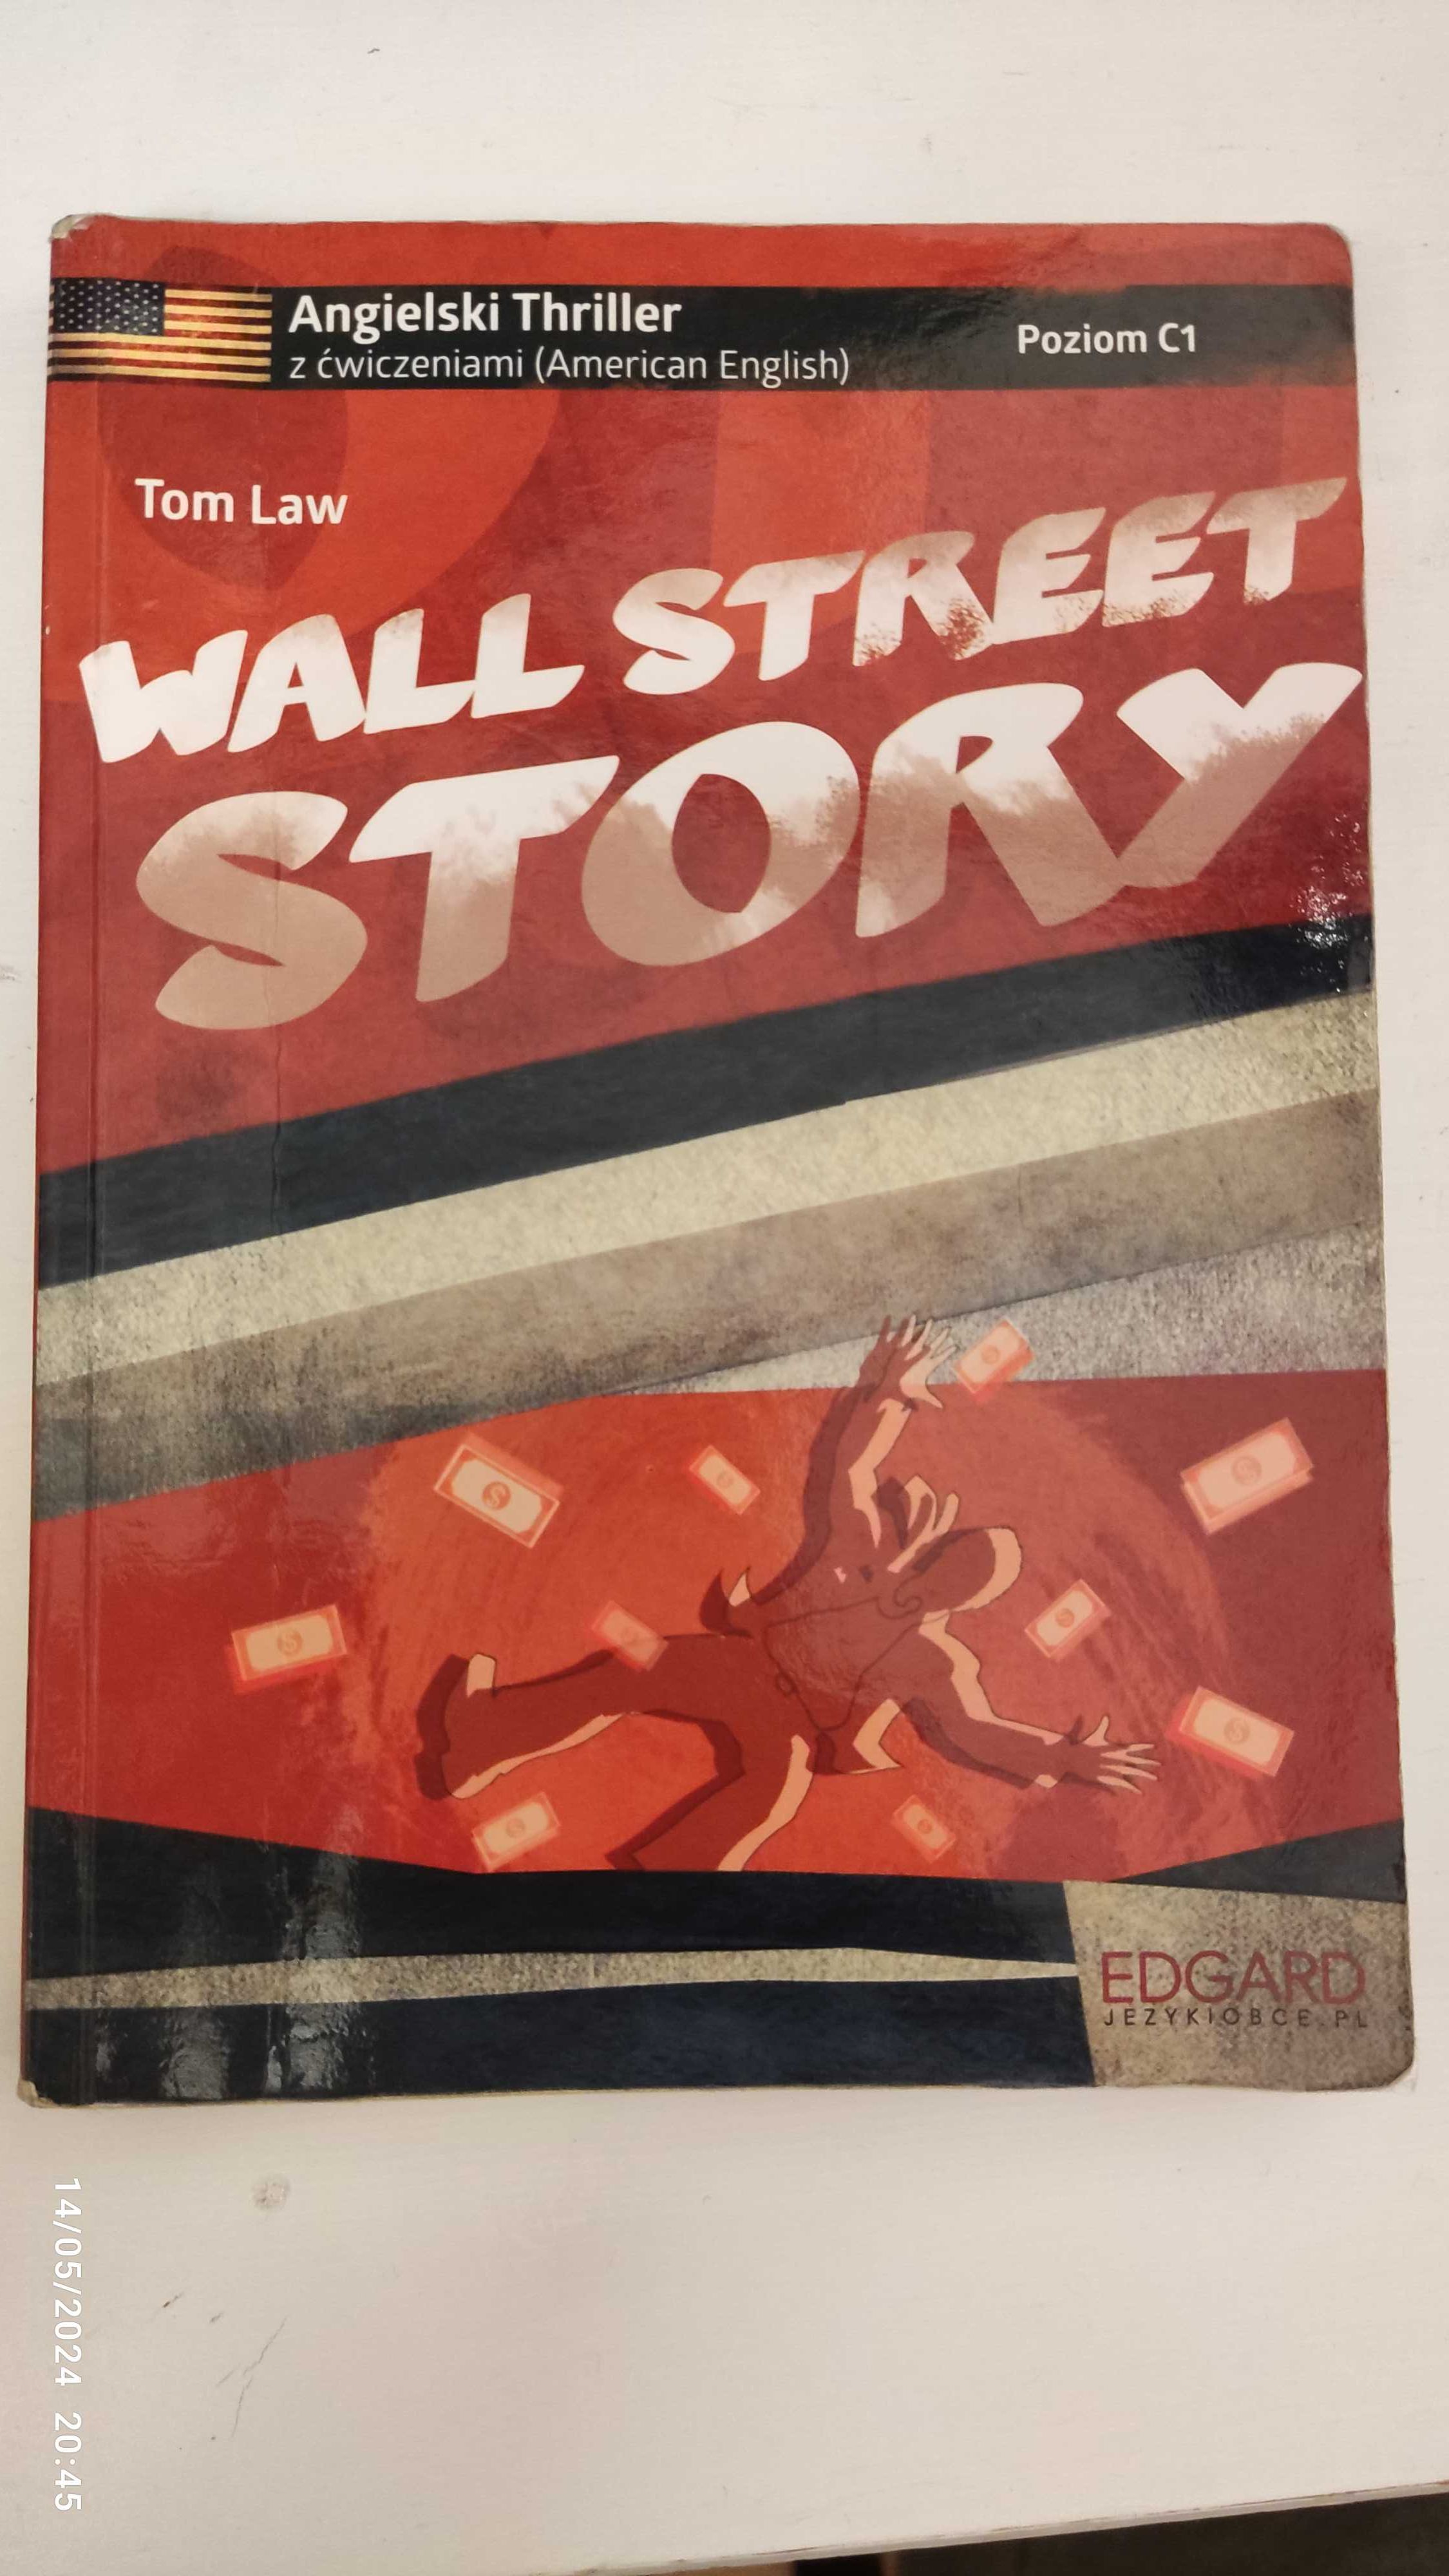 Angielski z ćwiczeniami. Wall Street Story. C1. Tom Law. Okazja !